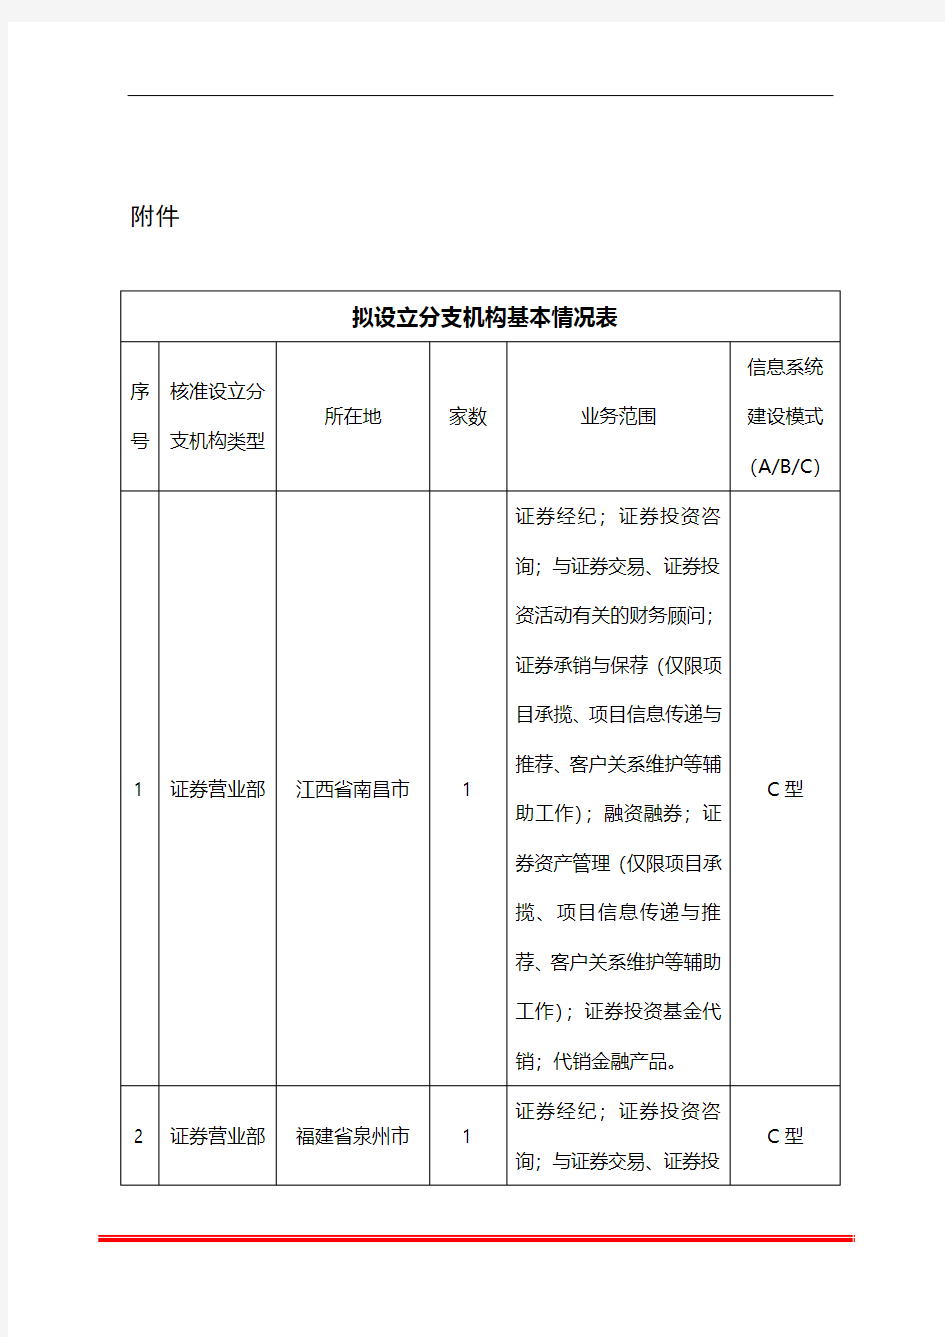 拟设立分支机构基本情况表 - 中国证监会